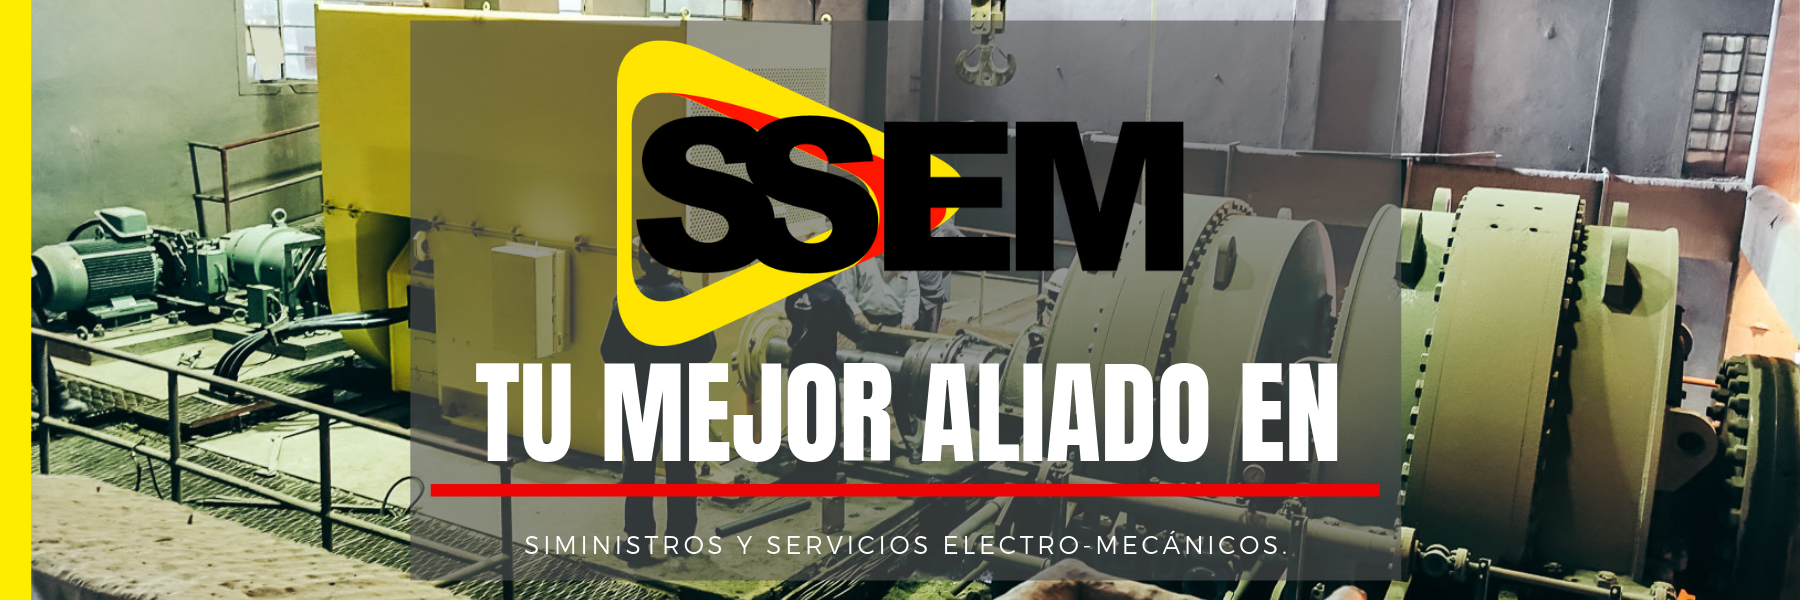 SSEM tu mejor aliado en suministros y servicios electro-mecánicos